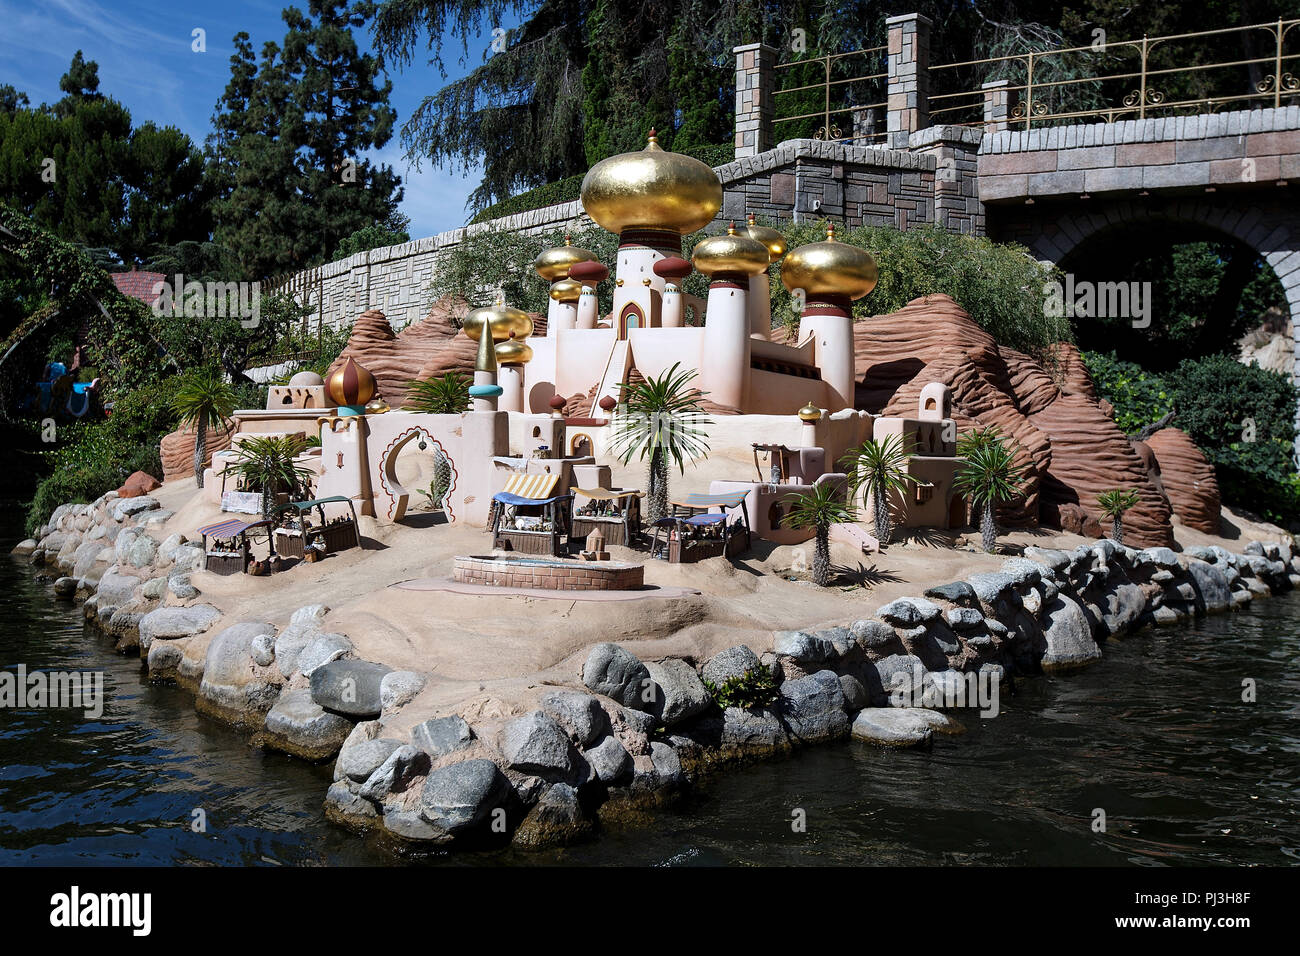 Palazzo del Sultano da Aladdin display sul Storybook Land Battelli ride, Disneyland Park di Anaheim, California, Stati Uniti d'America Foto Stock